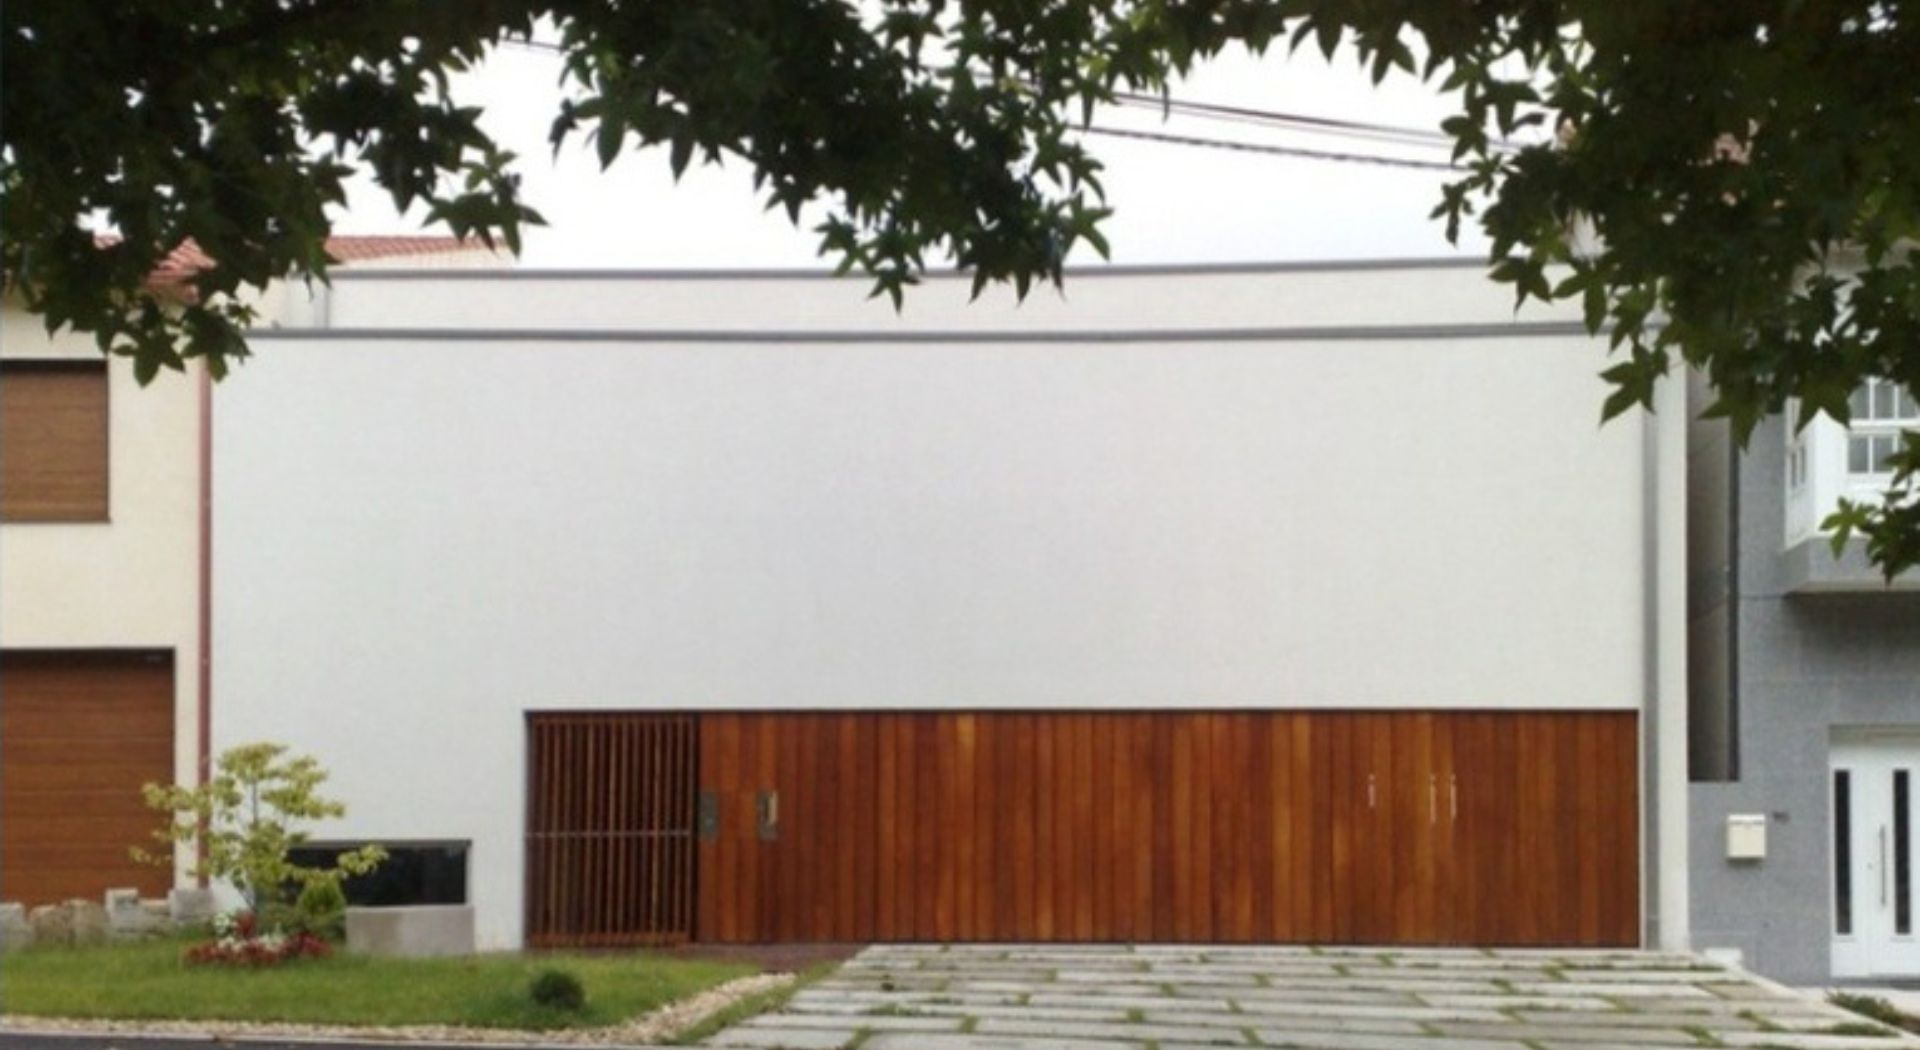 Arquitecto Villagarcía de Arousa vista exterior portal forrado de madera